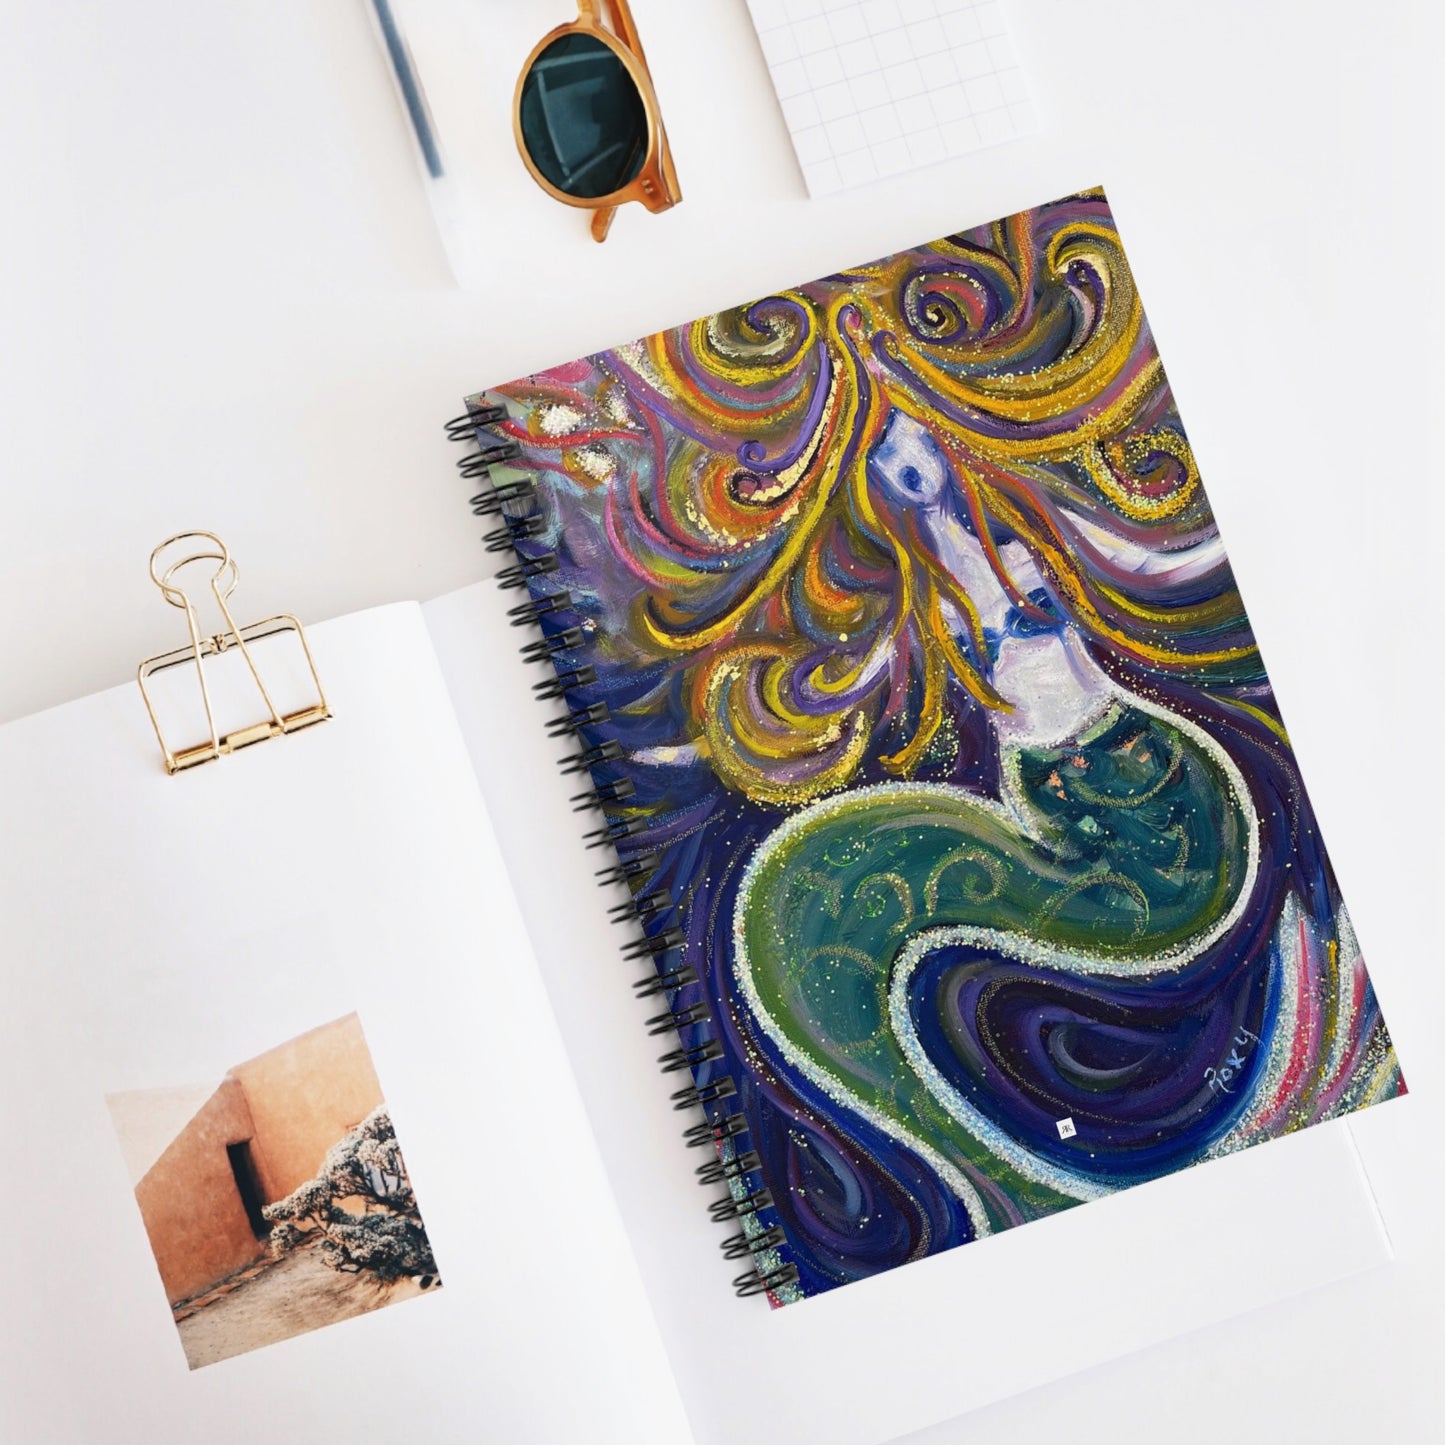 Mermaid Spiral Notebook